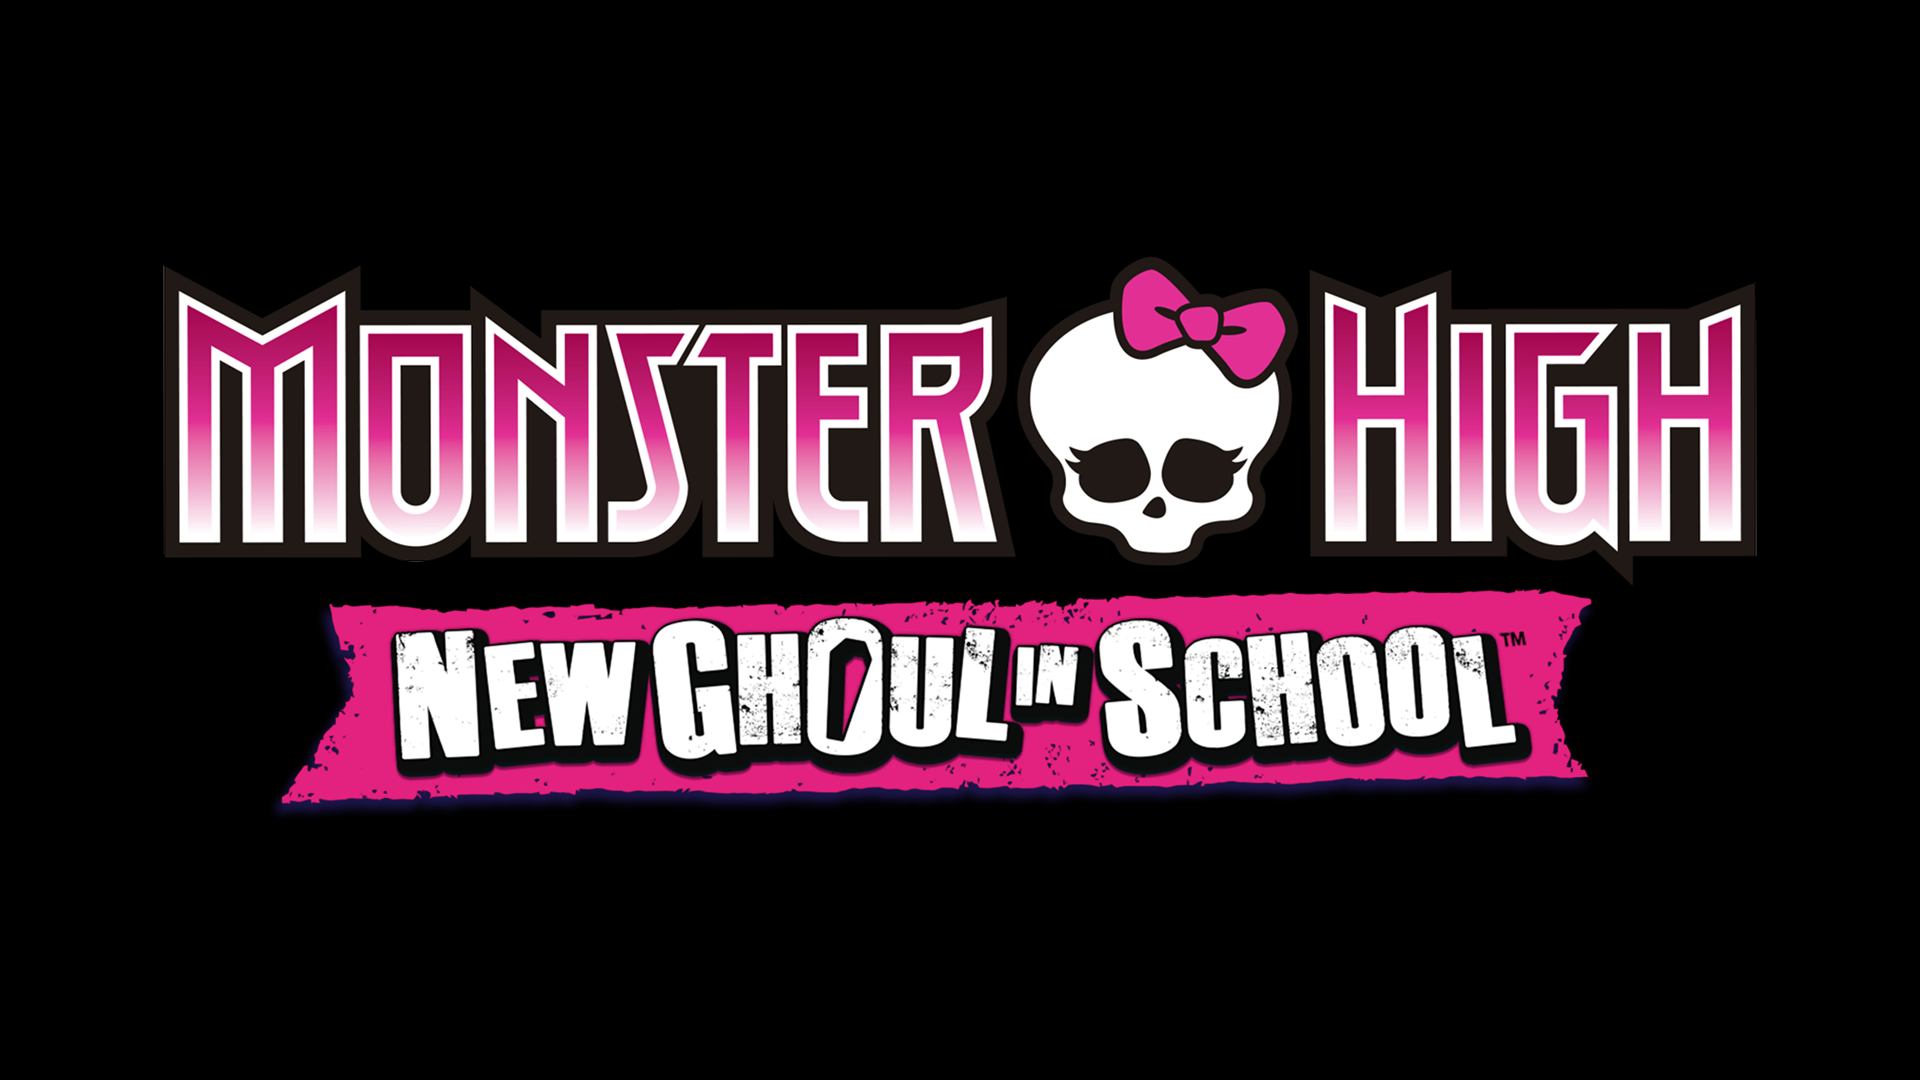 Монстер Хай New Ghoul in School. Обои Монстер Хай на рабочий стол. New Monster High. New ghoul school